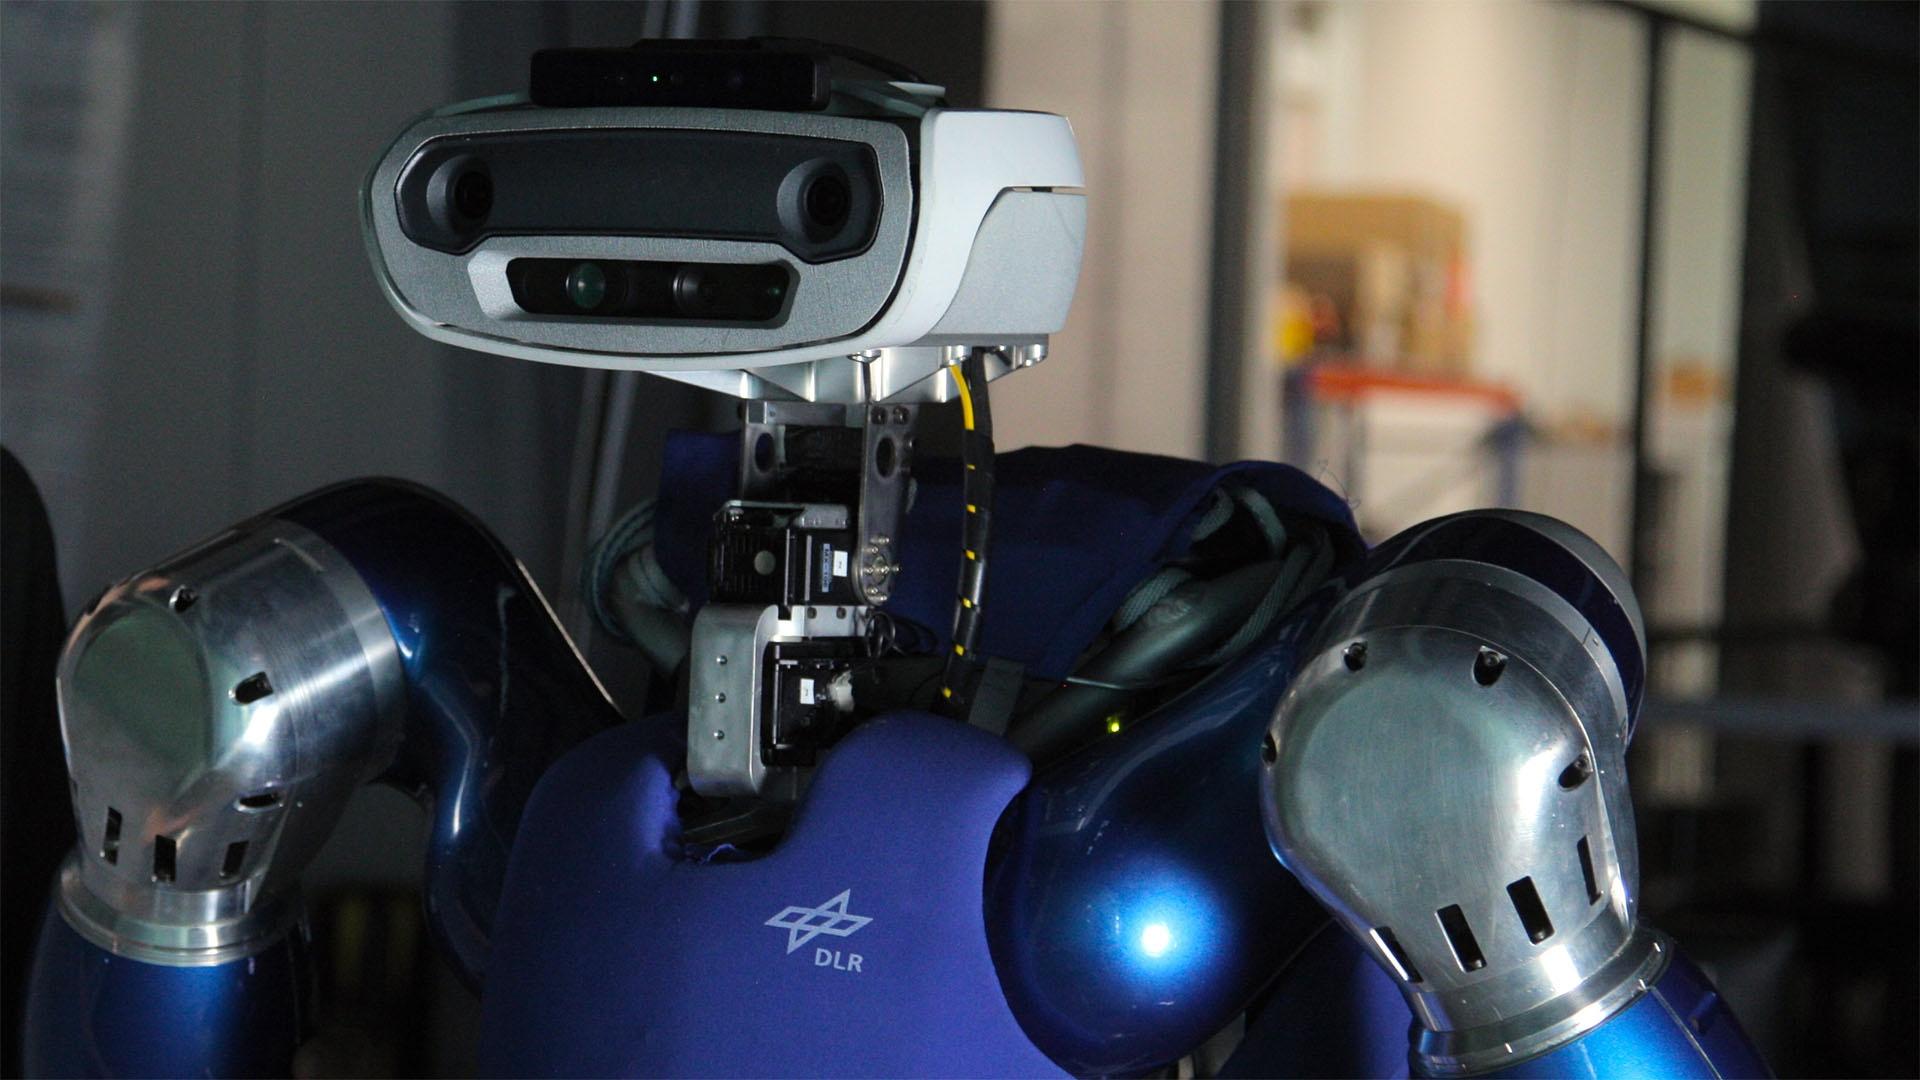 Humanoid autonomous smart Robot dances above martian sea after a